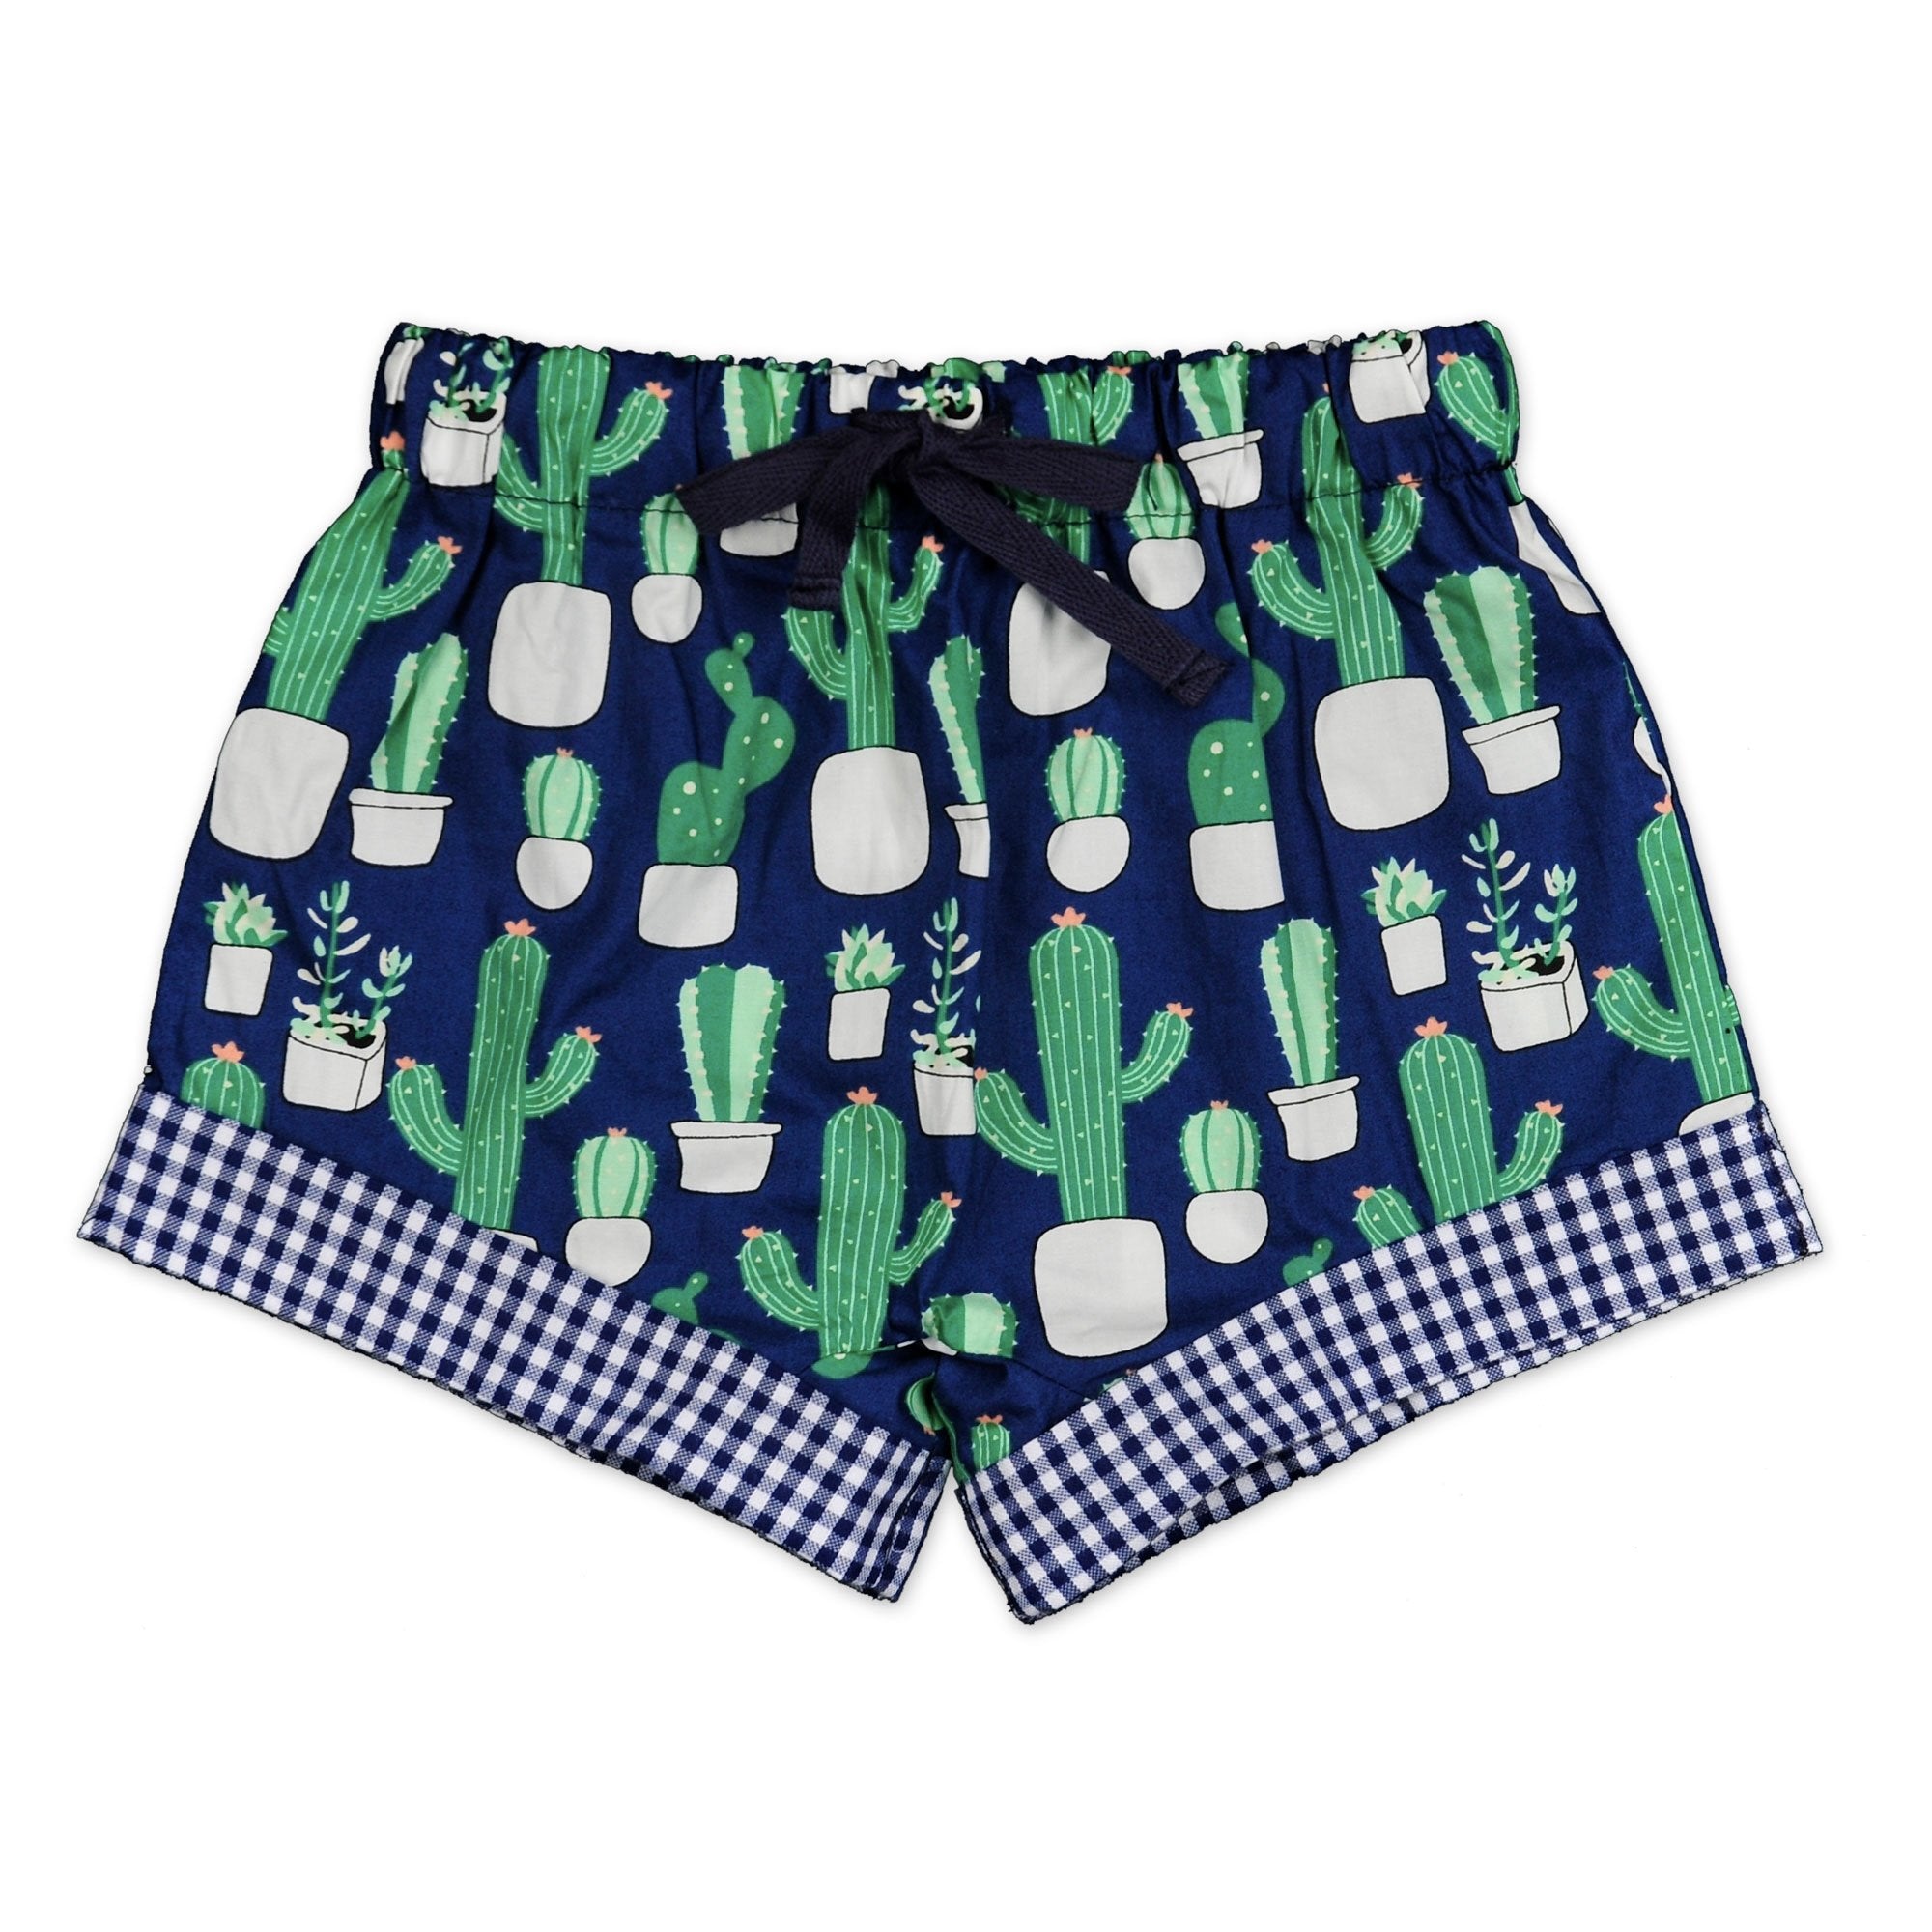 Boys Cactus Print Shorts - Cou Cou Baby